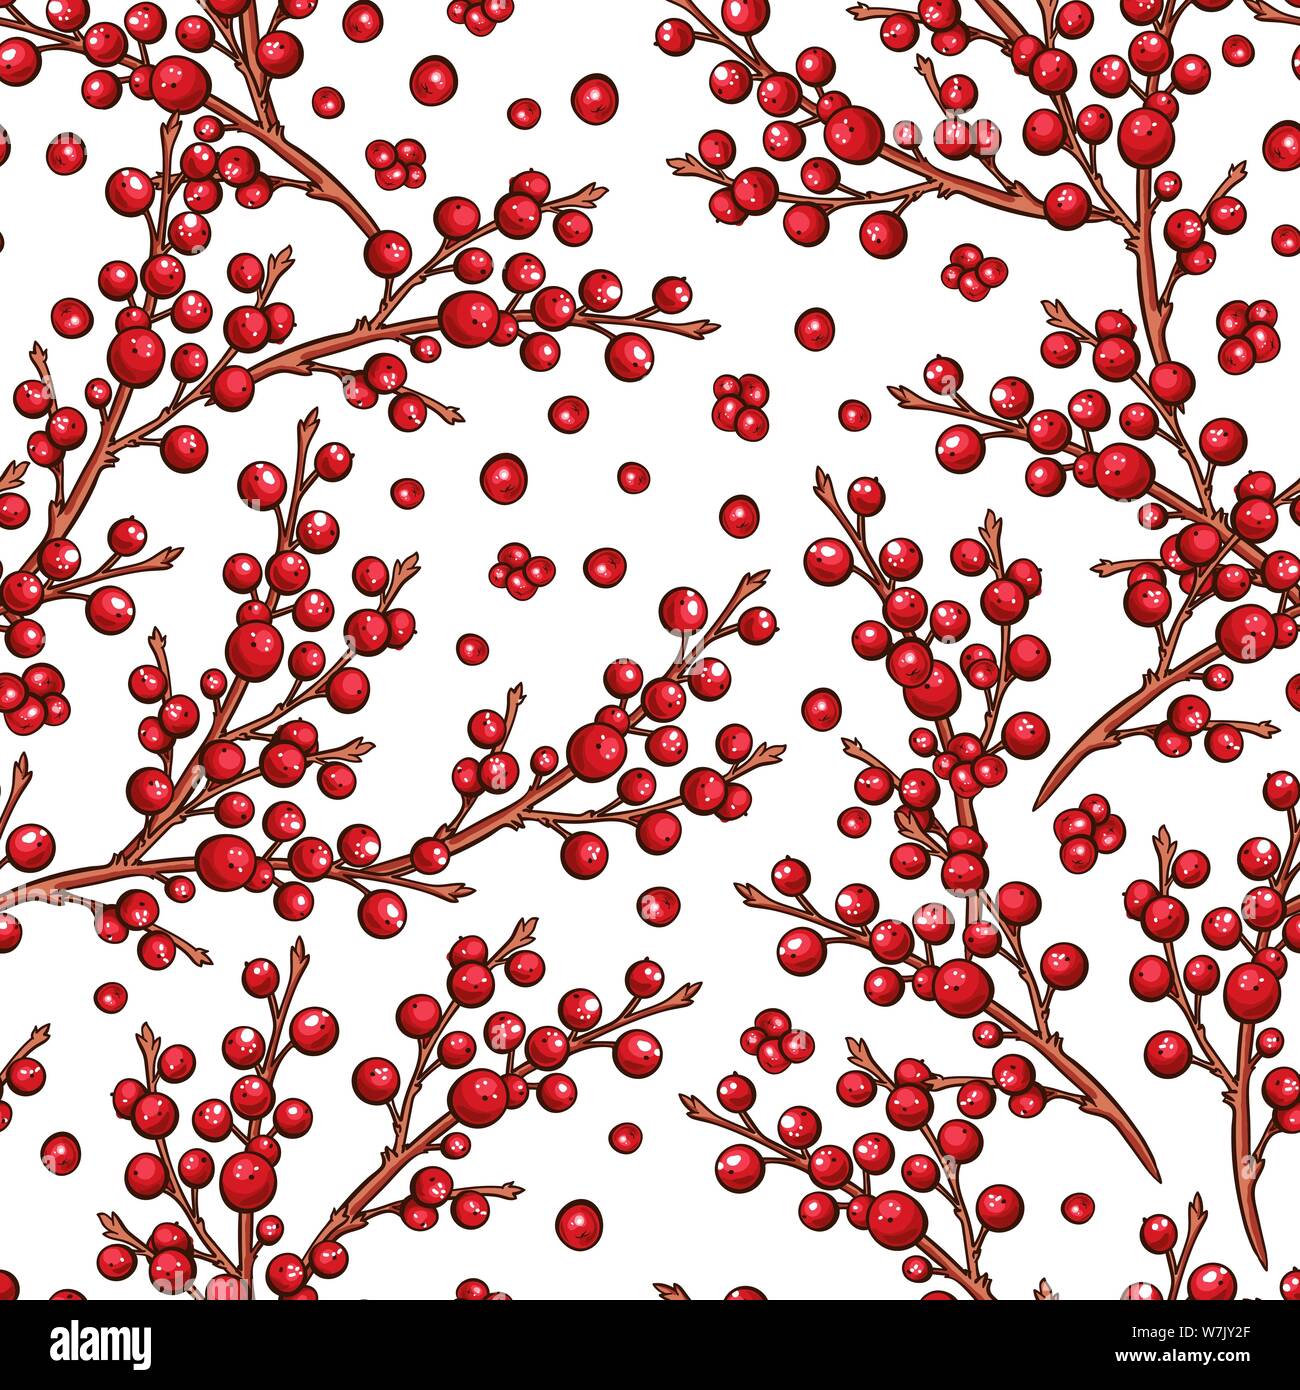 Die Europäische Stechpalme Ilex rote Beeren nahtlose Vektor Muster. Weihnachten scrapbooking oder Hintergrund Design mit floralen Filialen. Vinter handdrawn Marker Abbildung Stock Vektor